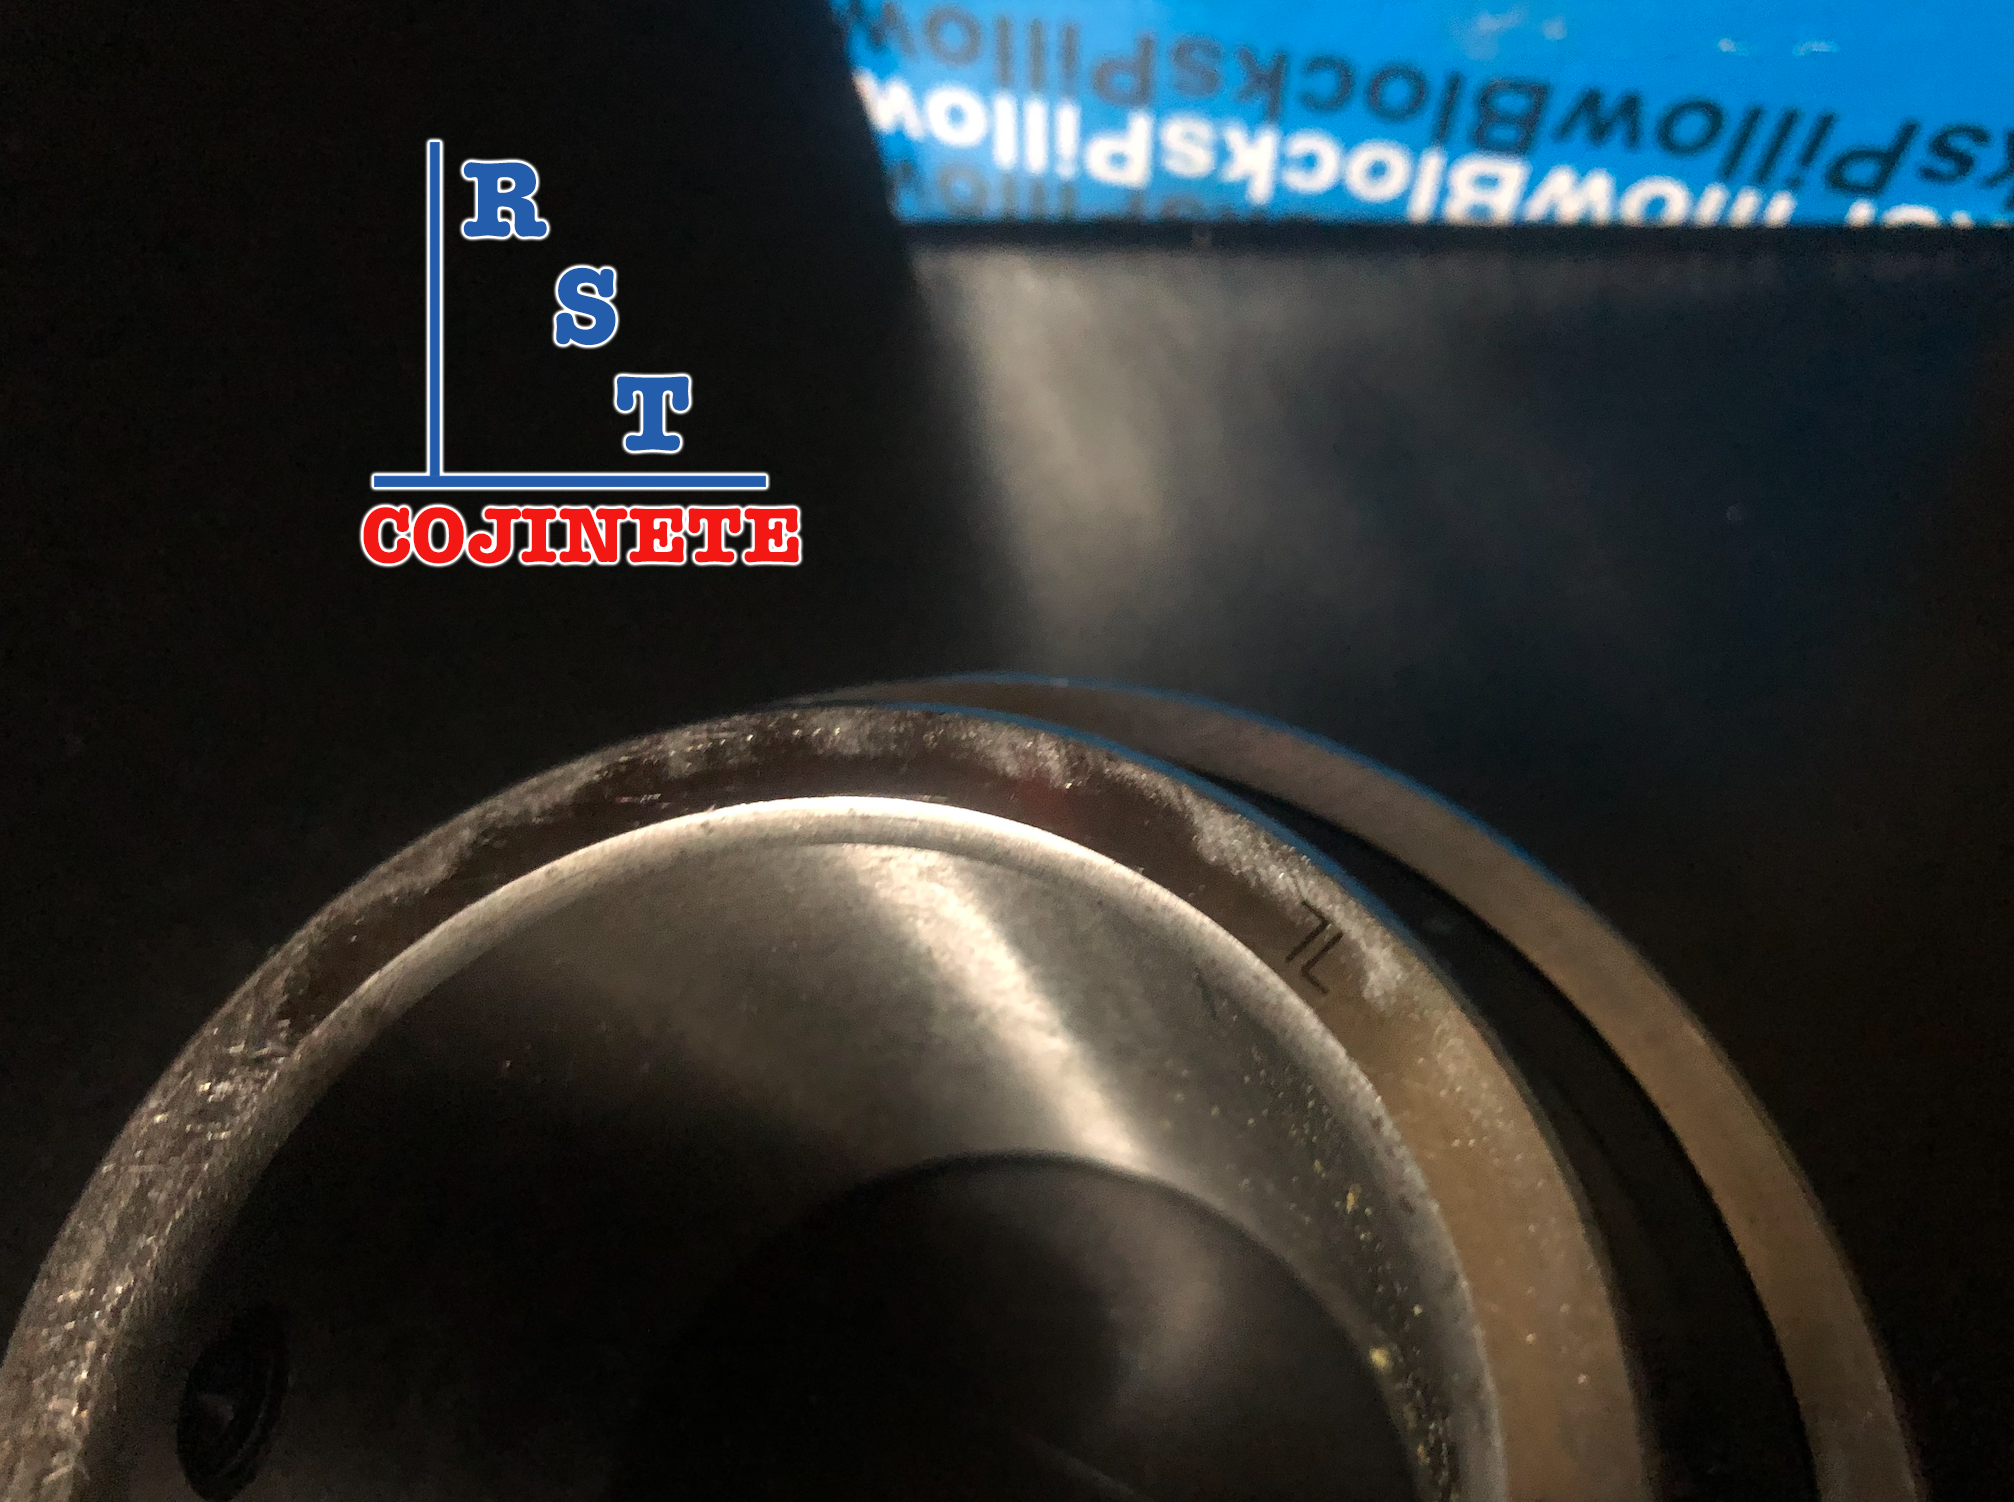 Cojinete insertable UC209-27 | Rodamiento para eje de 1-11/16" rígido de bolas con sello de hule para chumacera